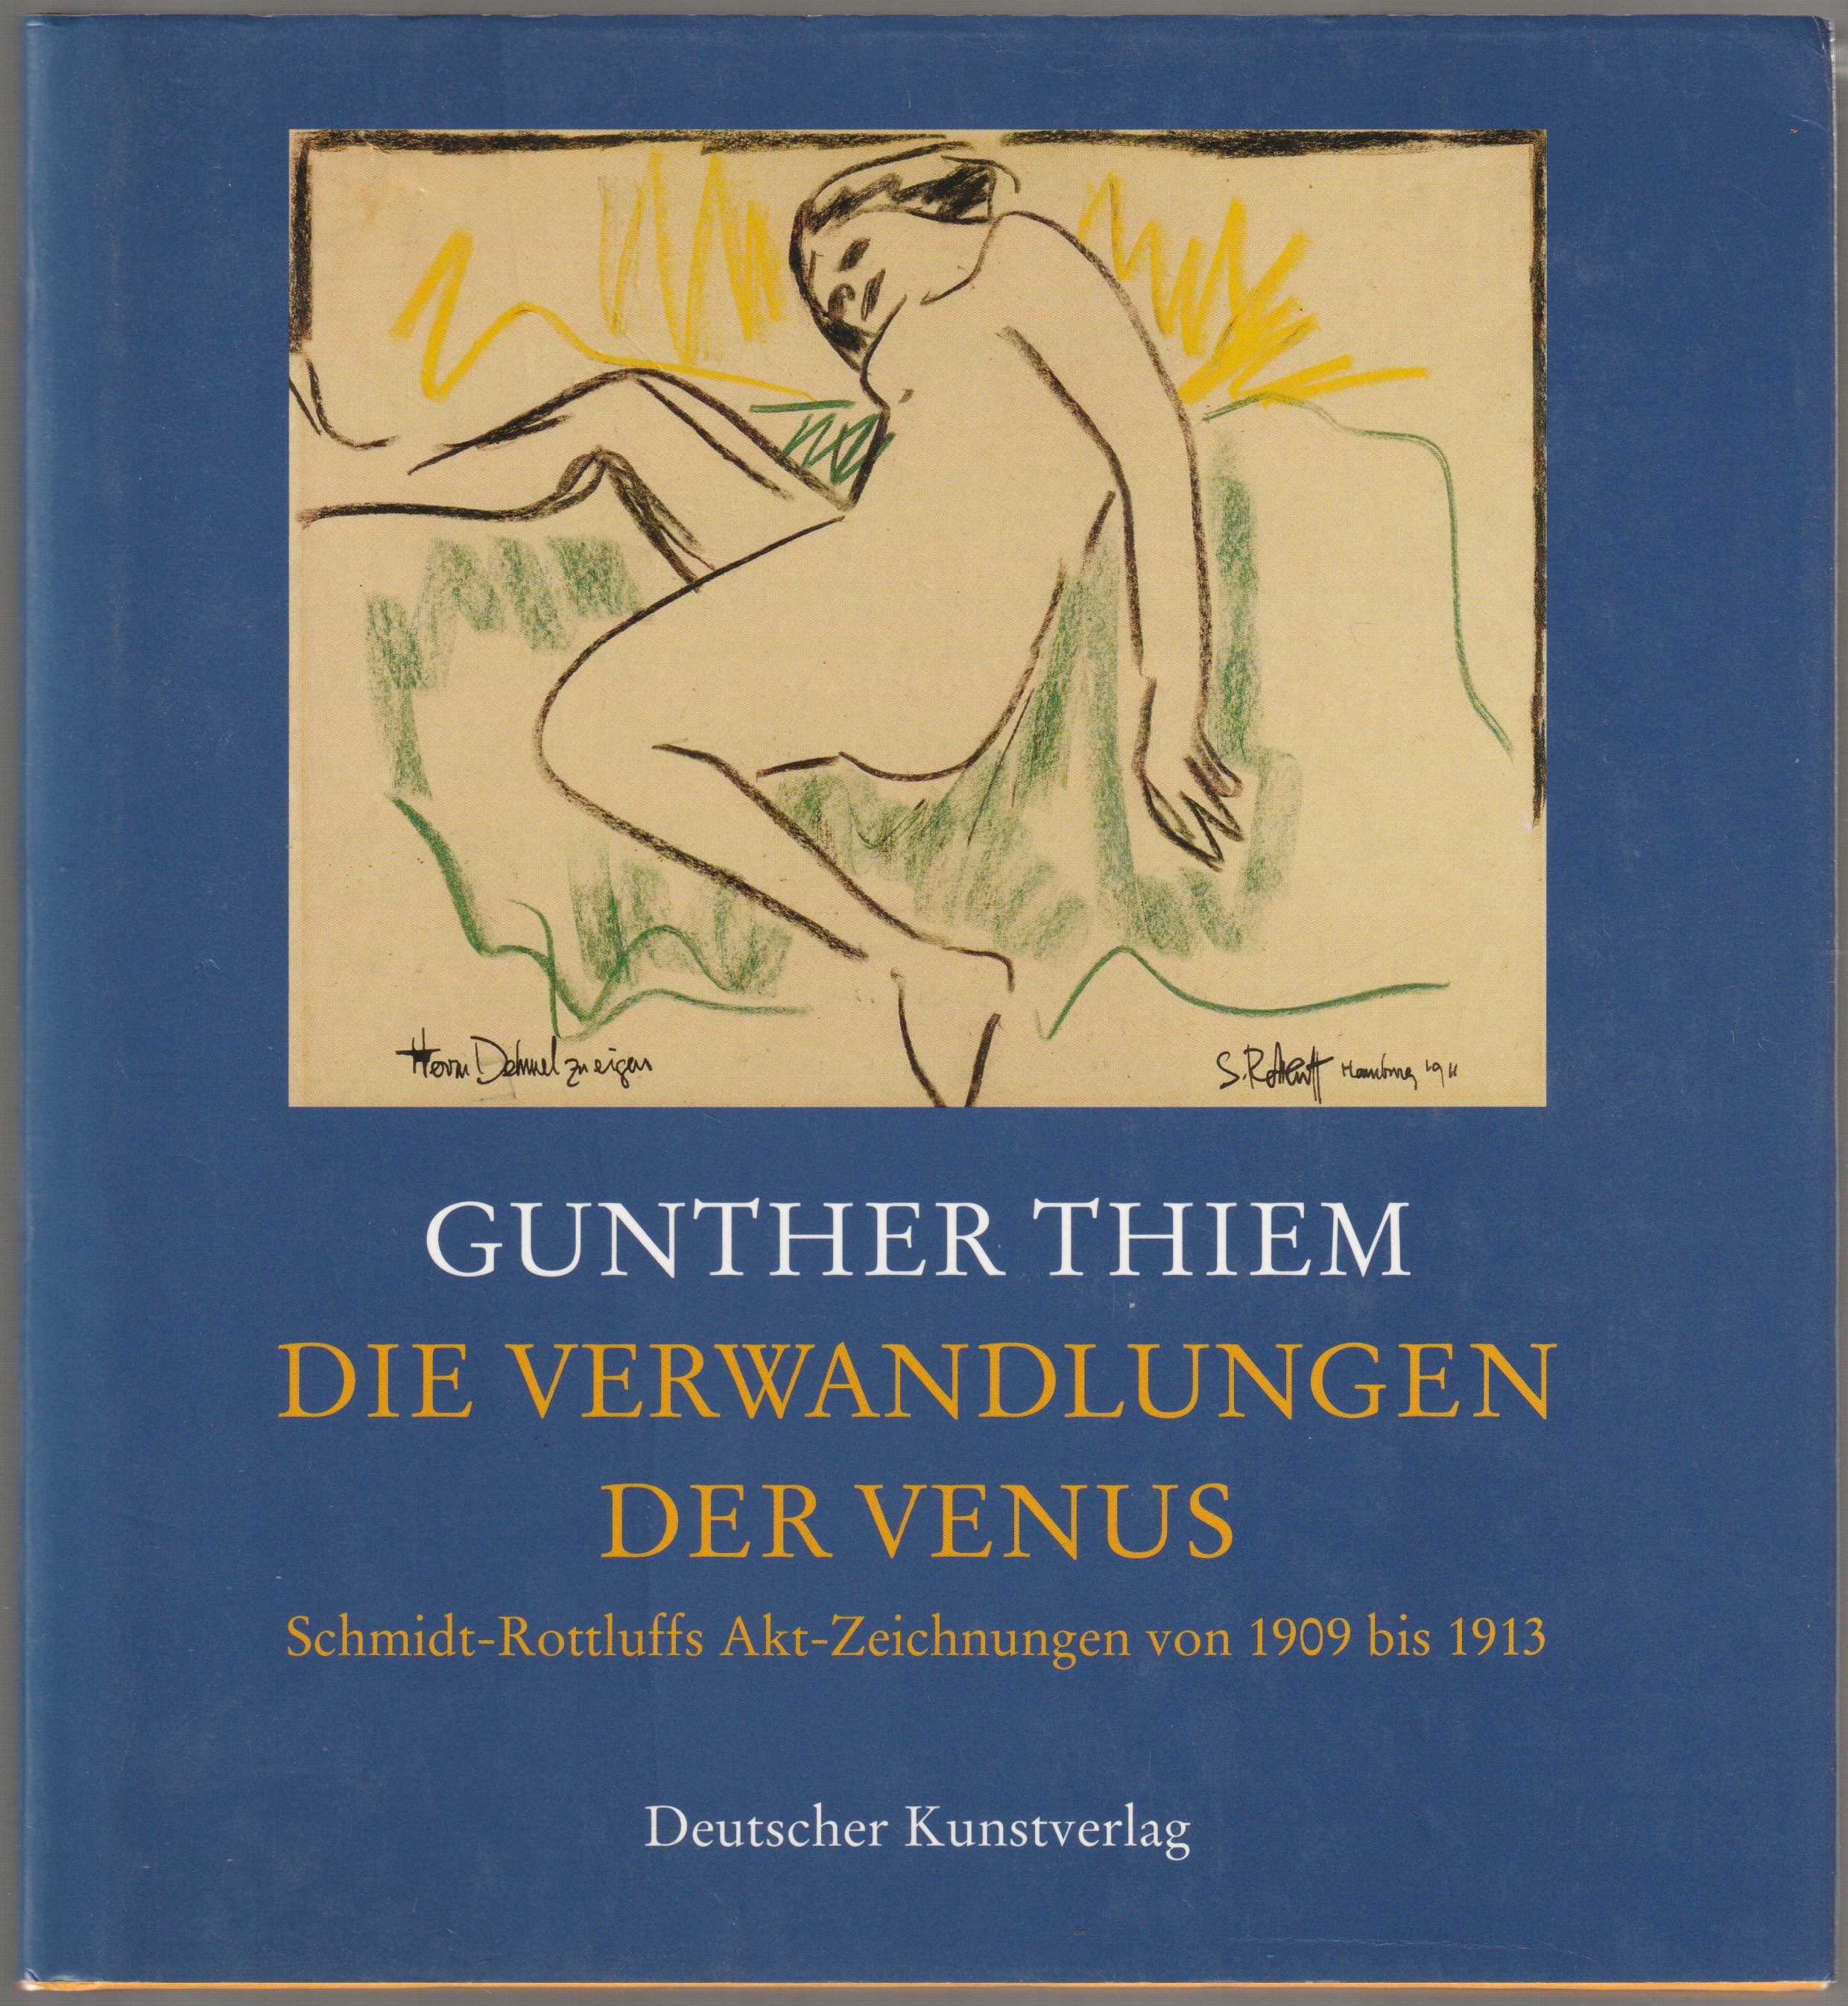 "Die Verwandlungen der Venus" : Schmidt-Rottluffs Akt-Zeichnungen von 1909 bis 1913.